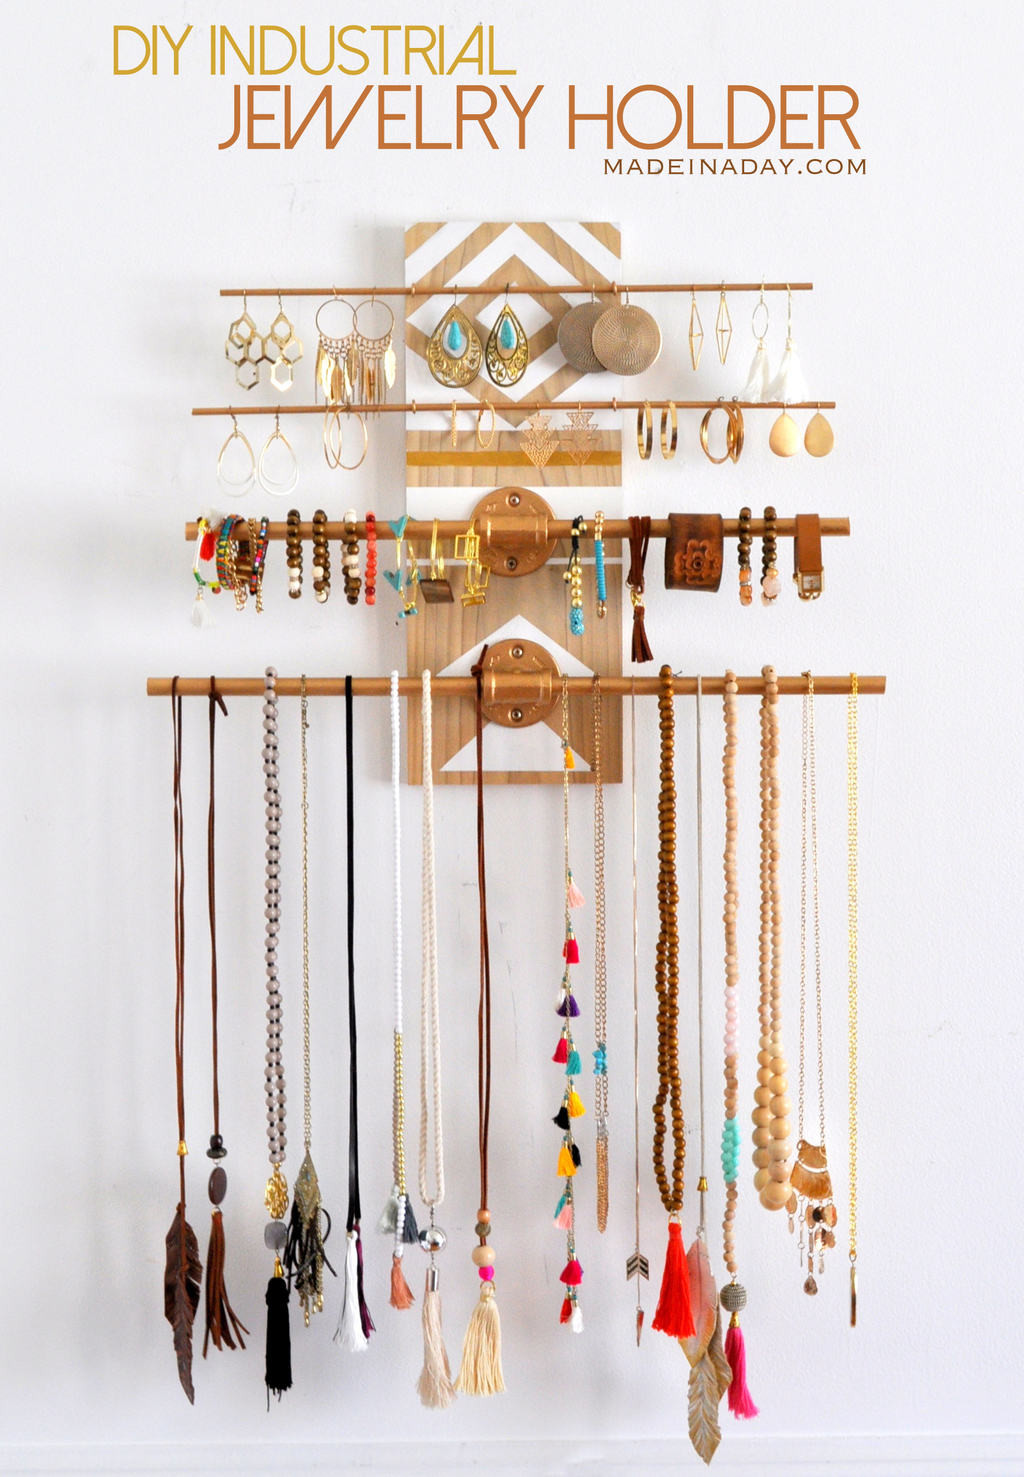 Wall Jewelry Organizer DIY
 DIY Geometric Industrial Wall Jewelry Organizer • Made in